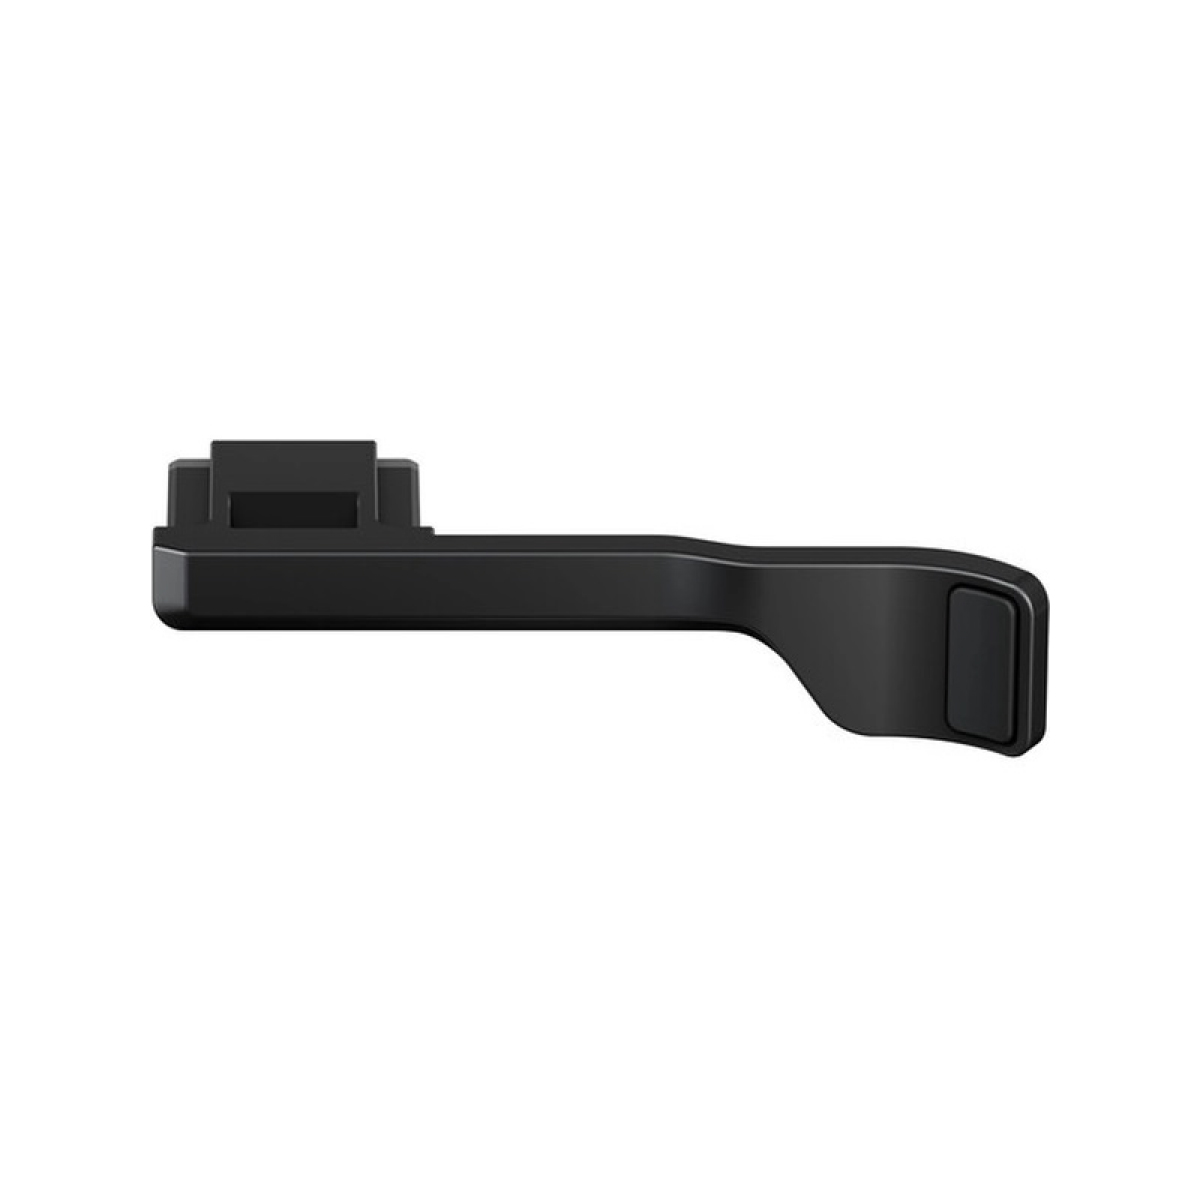 Fujifilm X-E4 Mirrorless Camera Body with Accessories – Black 1 (5)